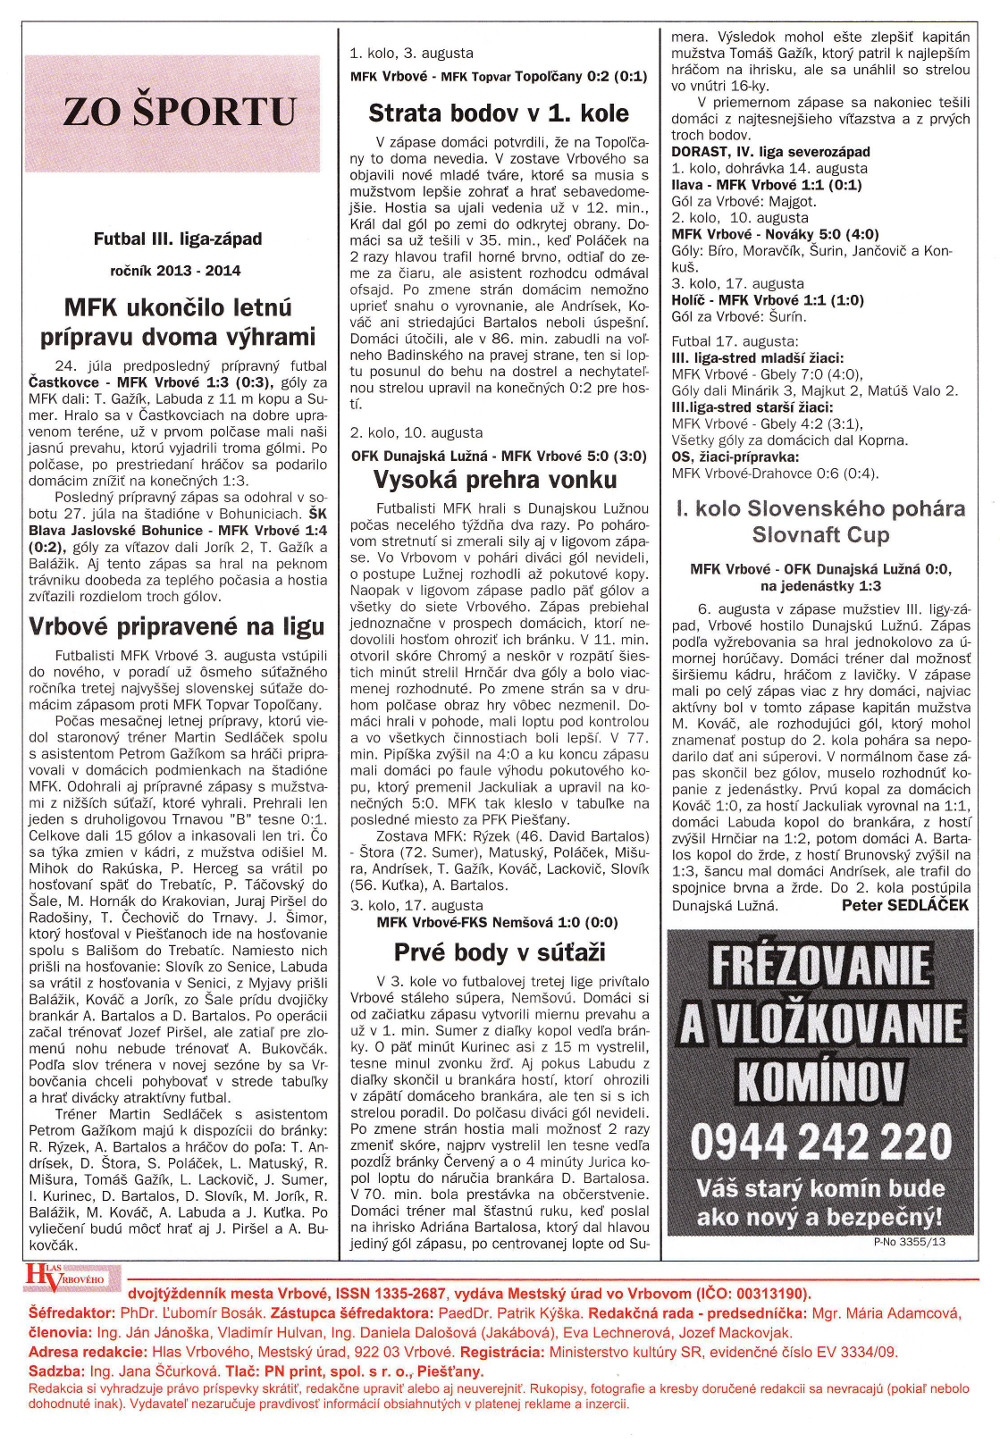 Hlas Vrbového 17/2013, strana 12